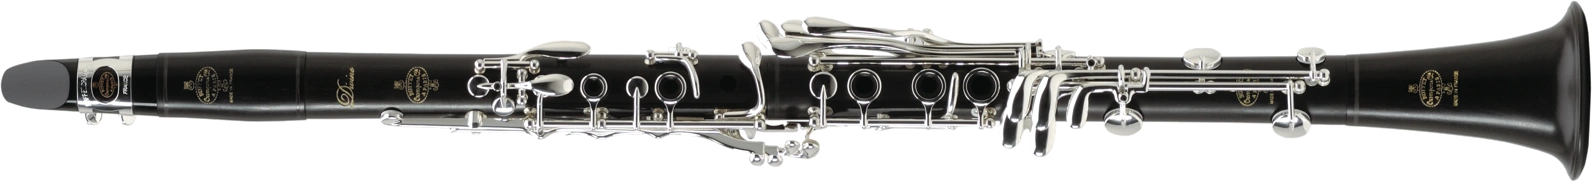 buffet crampon bass clarinet 1180